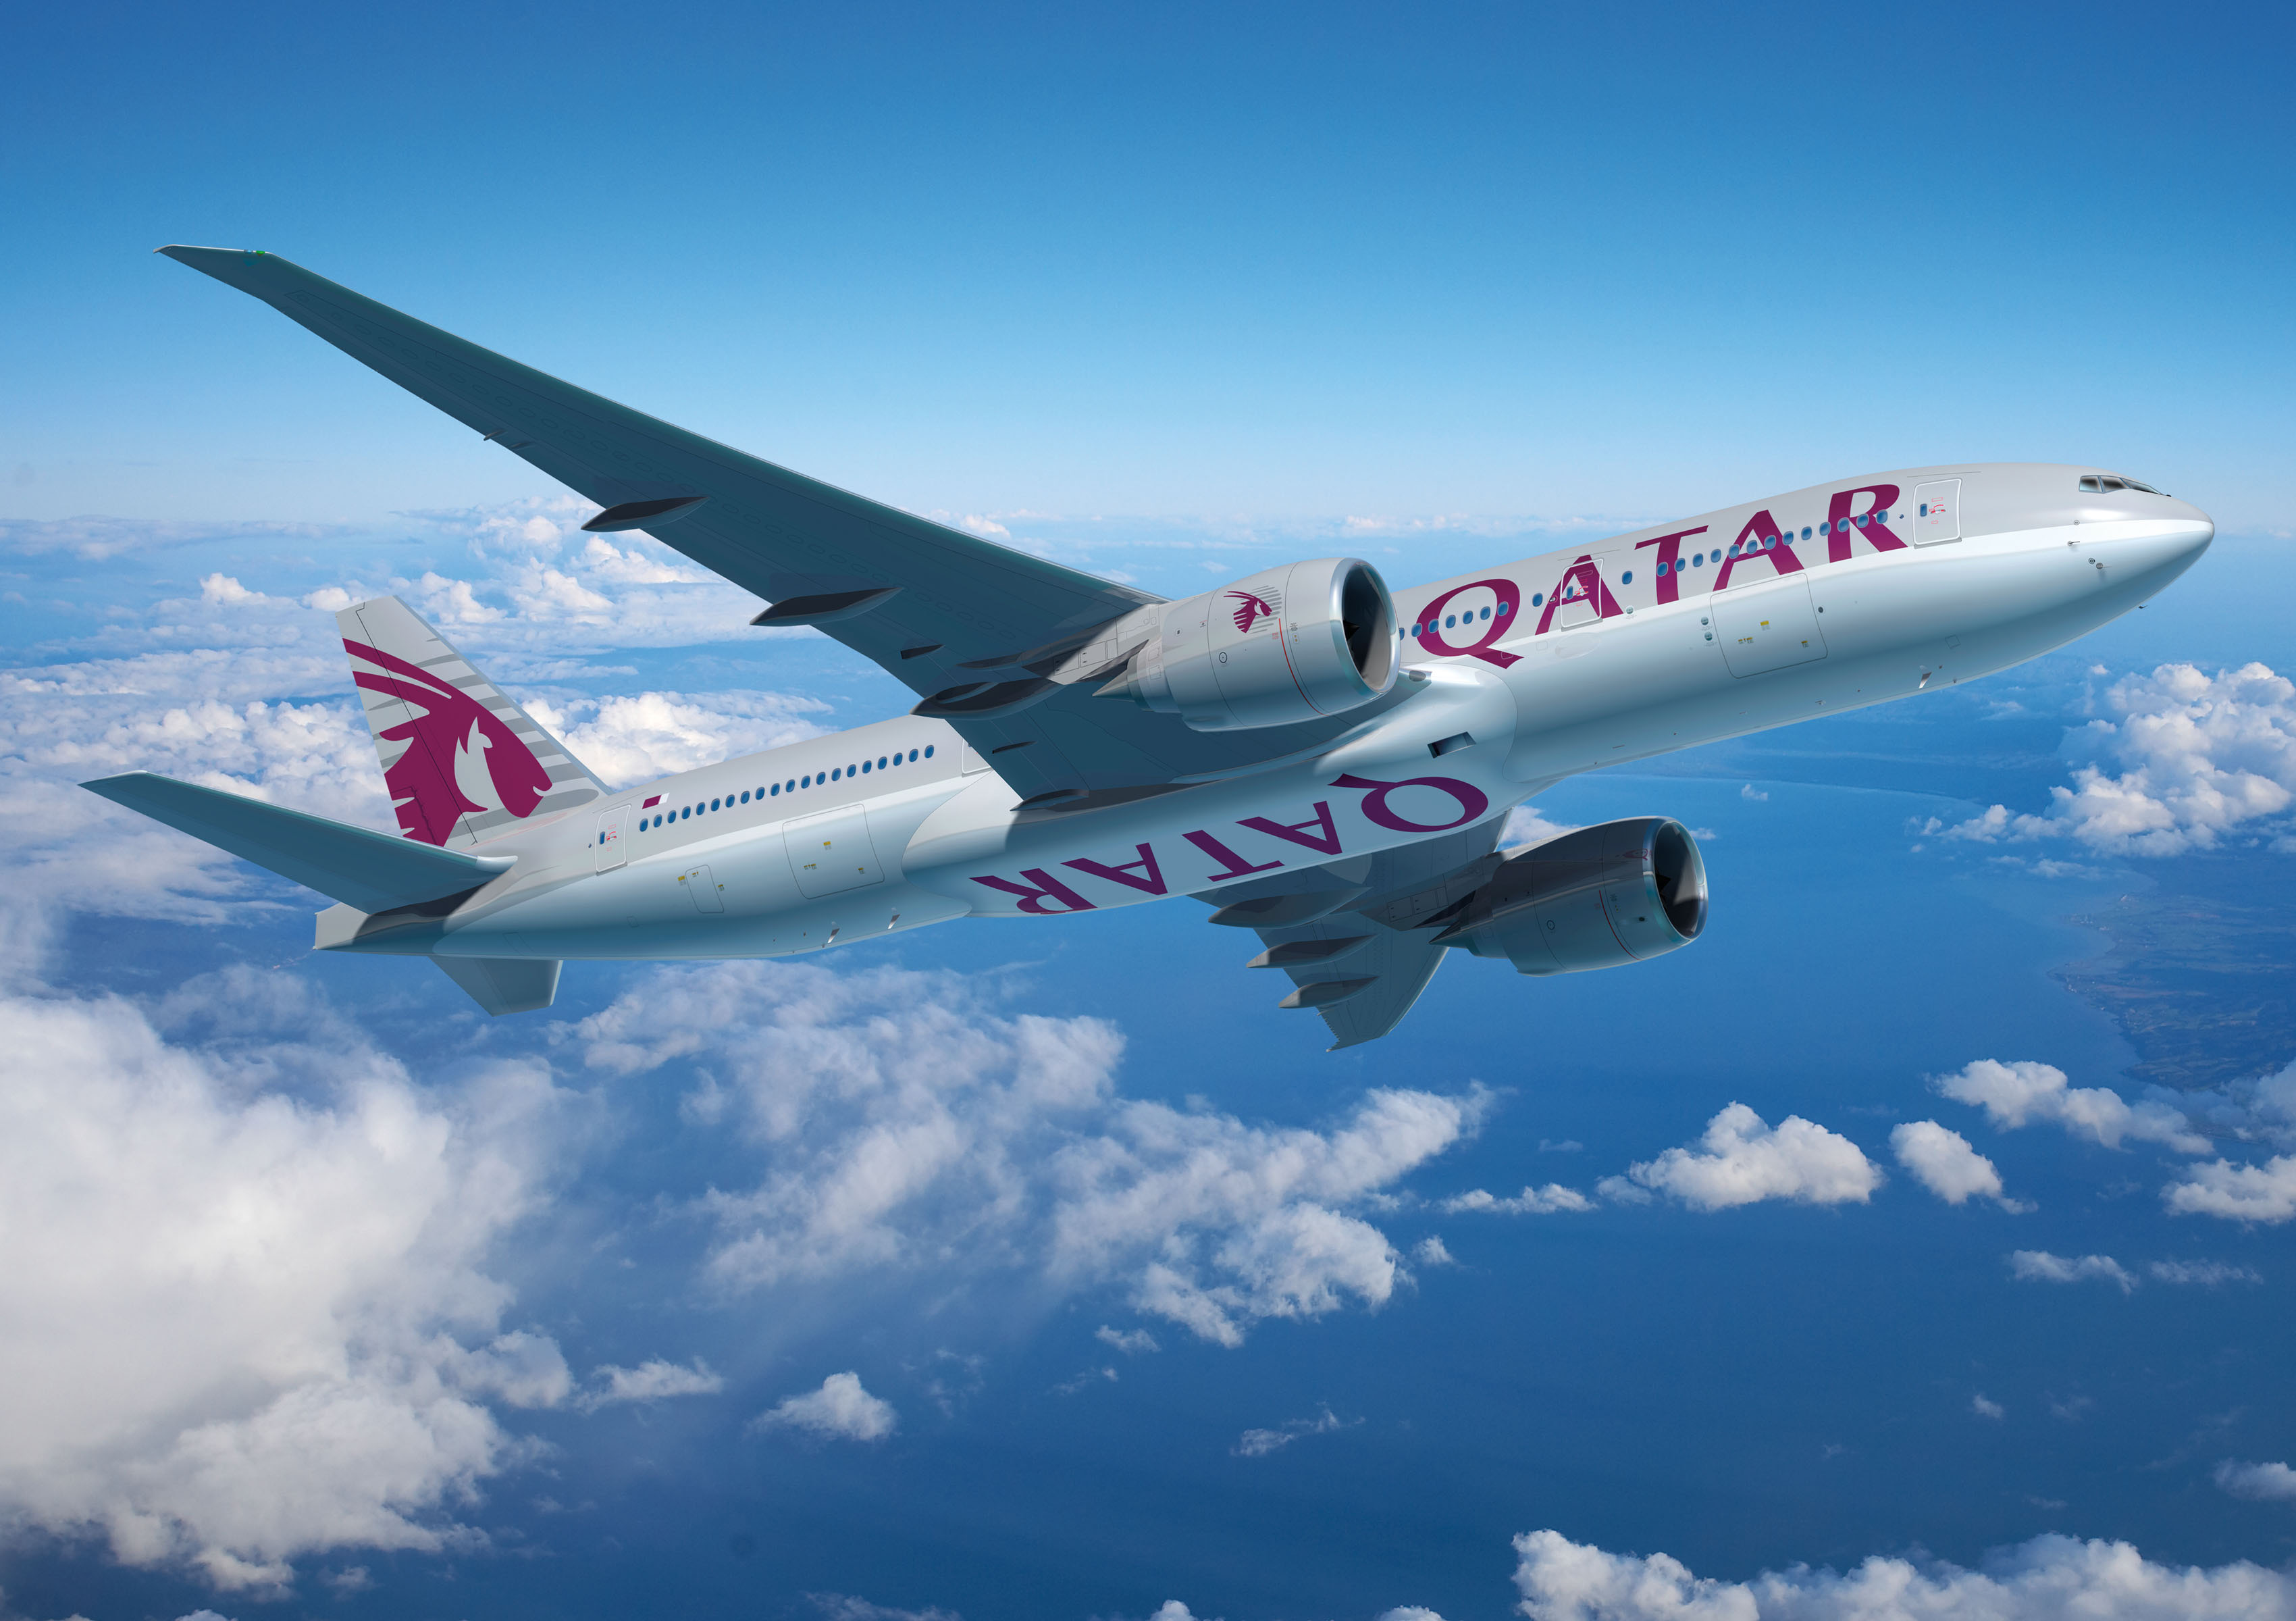 Катар купить авиабилет. Авиакомпания Qatar Airways самолеты. Катар Эйрлайнс самолеты. Авиакомпания Катар Эйрвейз. Самолет Qatar.